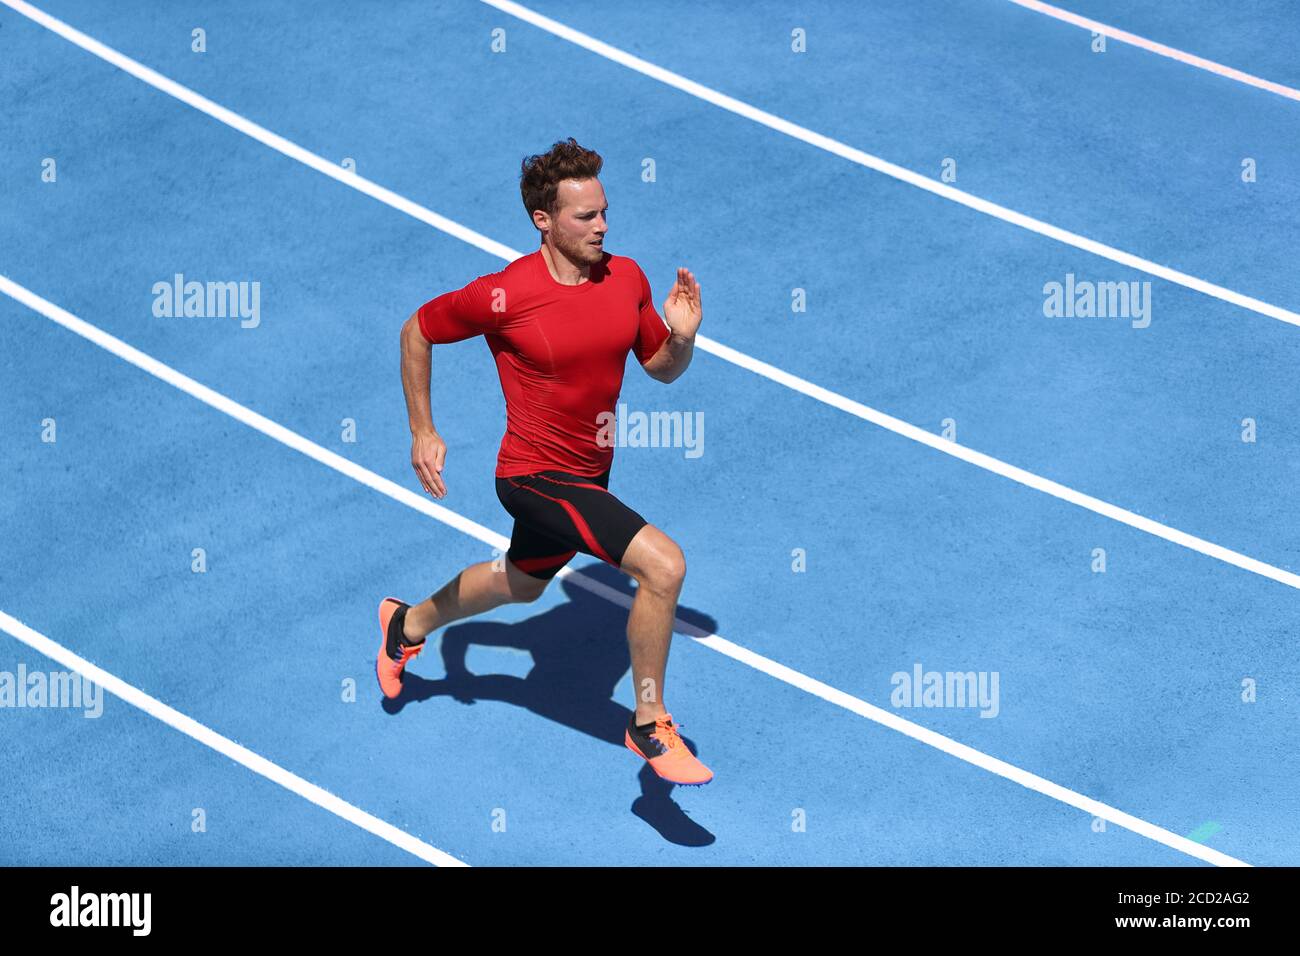 Sprinter Mann läuft auf blauen Spuren Spuren im Leichtathletik-Stadion in High Speed Draufsicht. Männlicher Läufer im intensiven Sprinttraining. Laufen Sie Sport Stockfoto